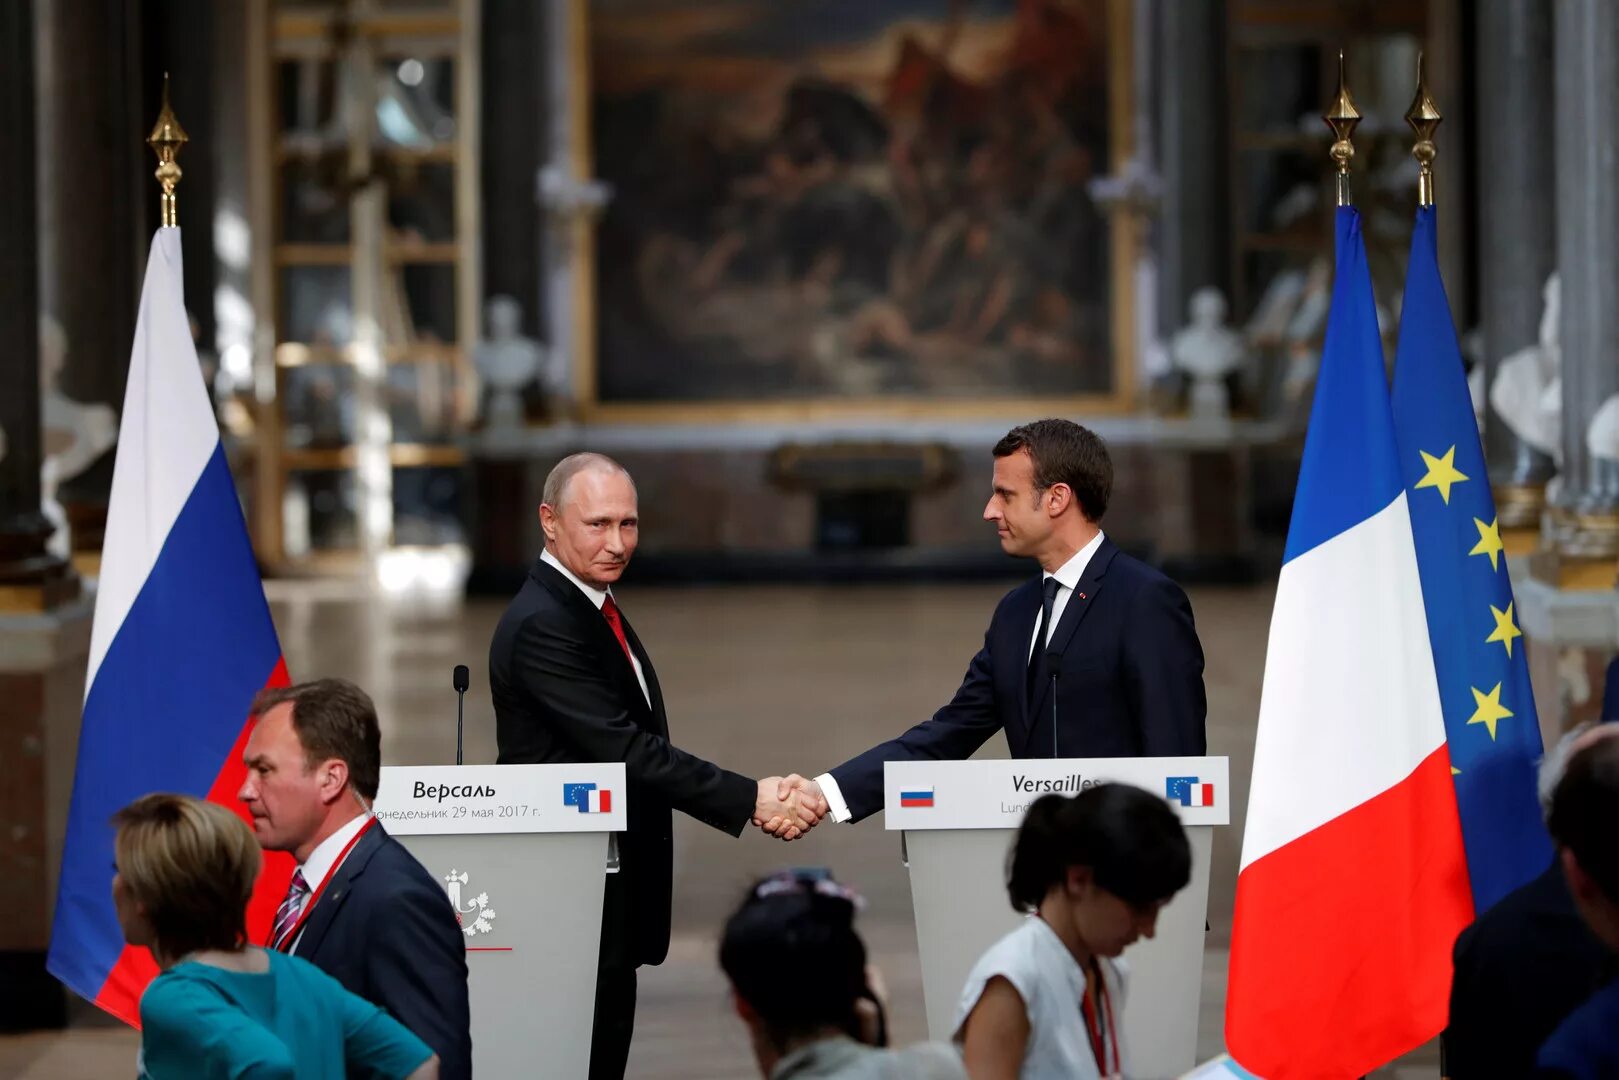 Переговоры с французами. Переговоры во Франции. Переговоры России и Франции.